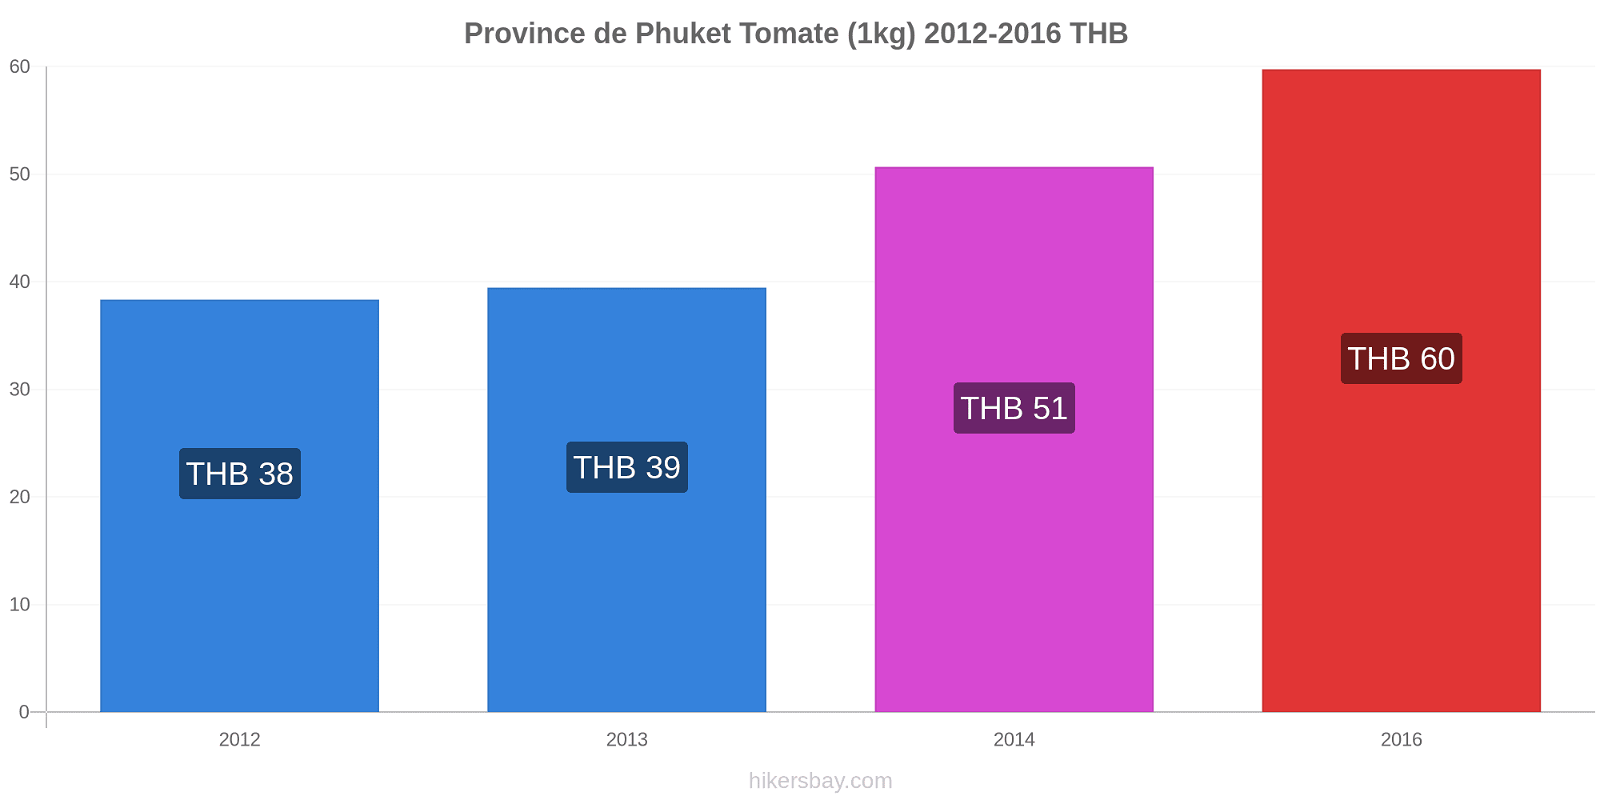 Province de Phuket changements de prix Tomate (1kg) hikersbay.com